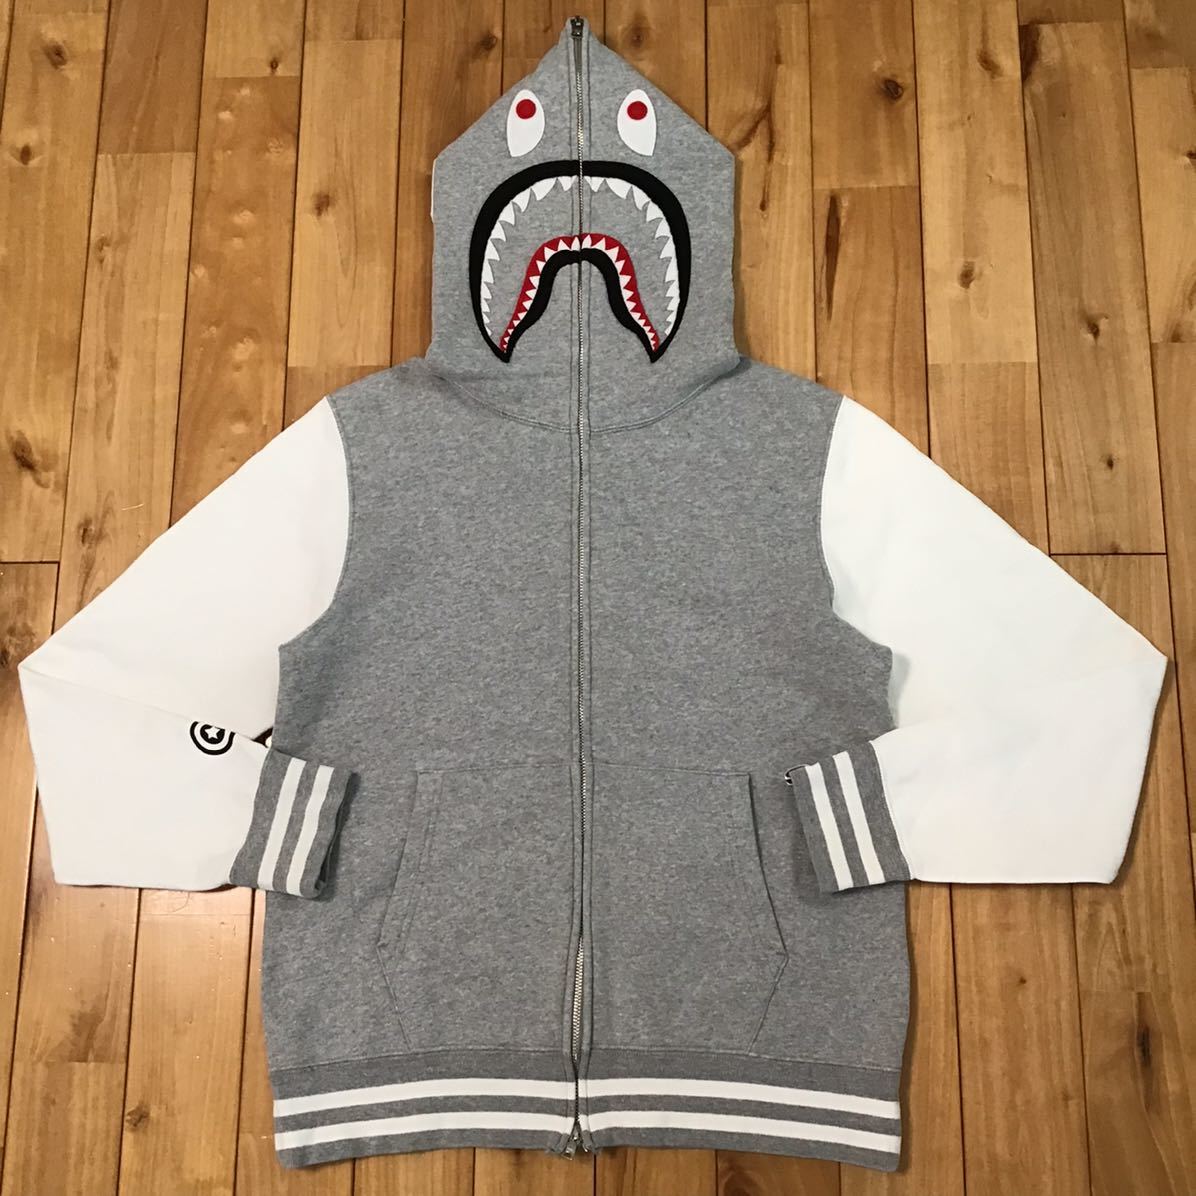 シャーク パーカー グレー × ホワイト Mサイズ shark full zip hoodie a bathing ape bape エイプ ベイプ アベイシングエイプ d51